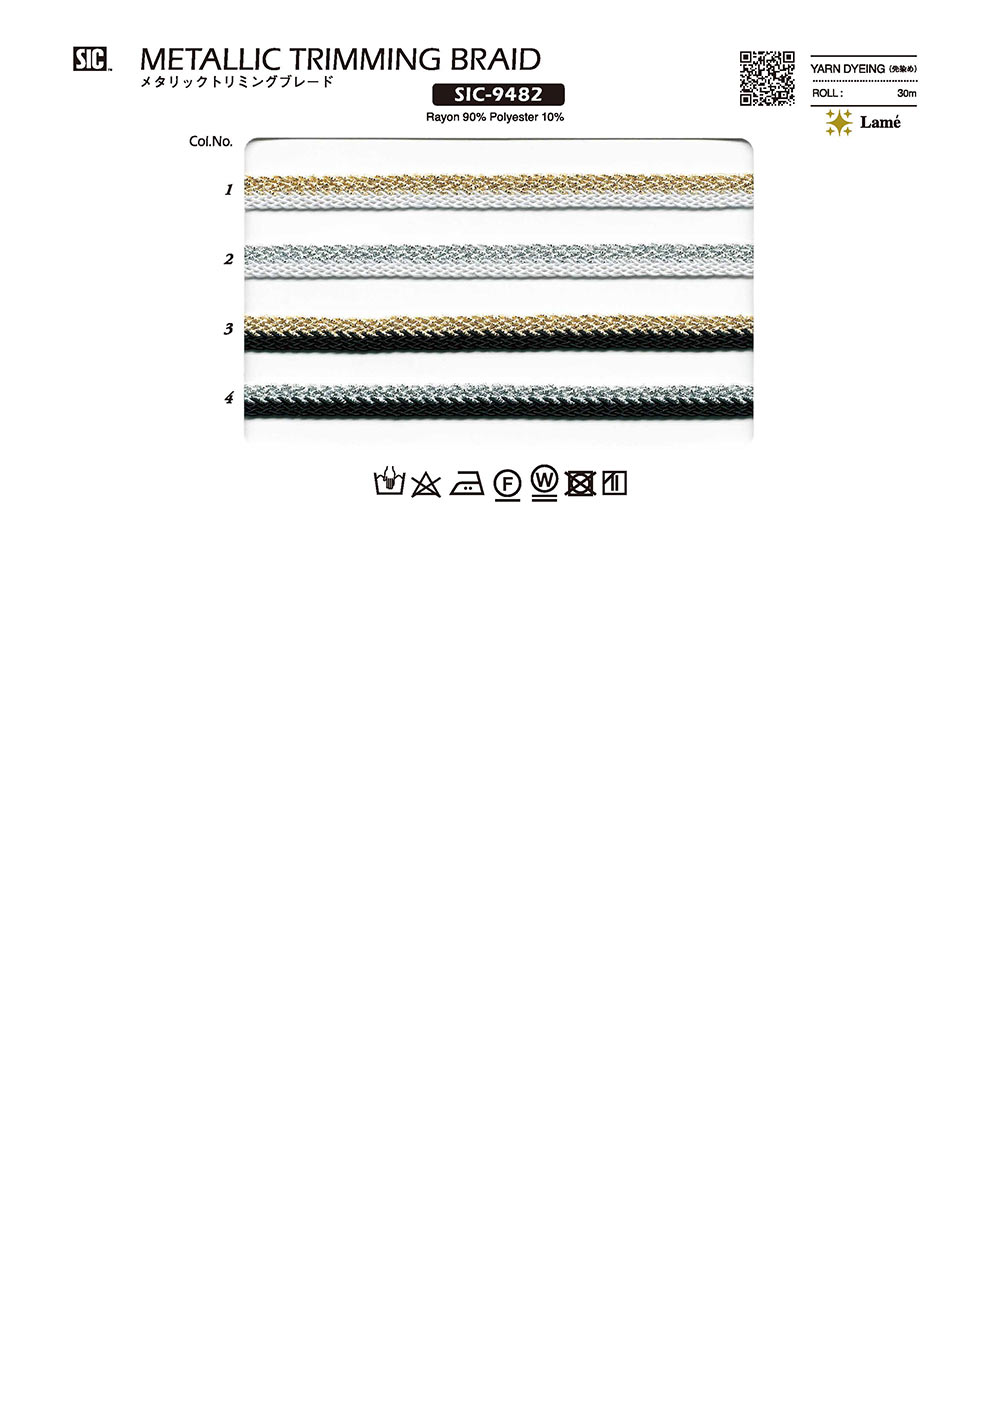 SIC-9482 メタリックトリミングブレード[リボン・テープ・コード] SHINDO(SIC)